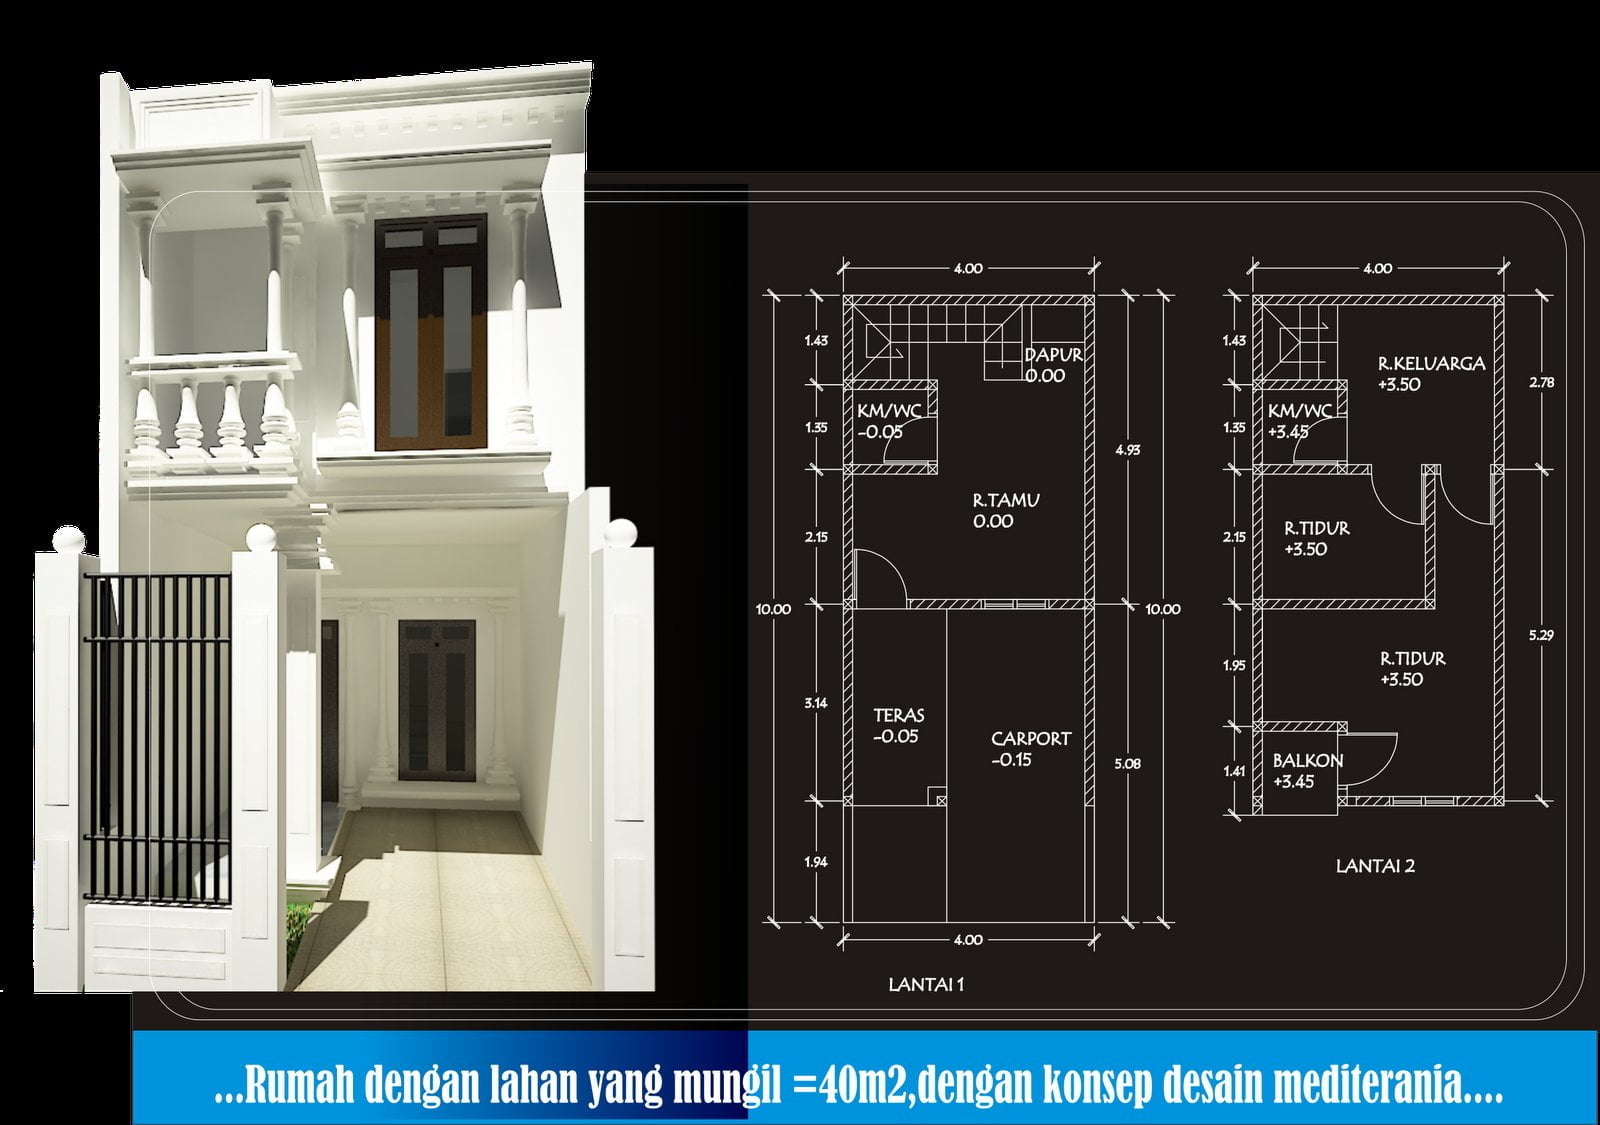 85 Gambar Desain Teras Rumah Ukuran 4 Meter Yang Wajib Kamu Ketahui